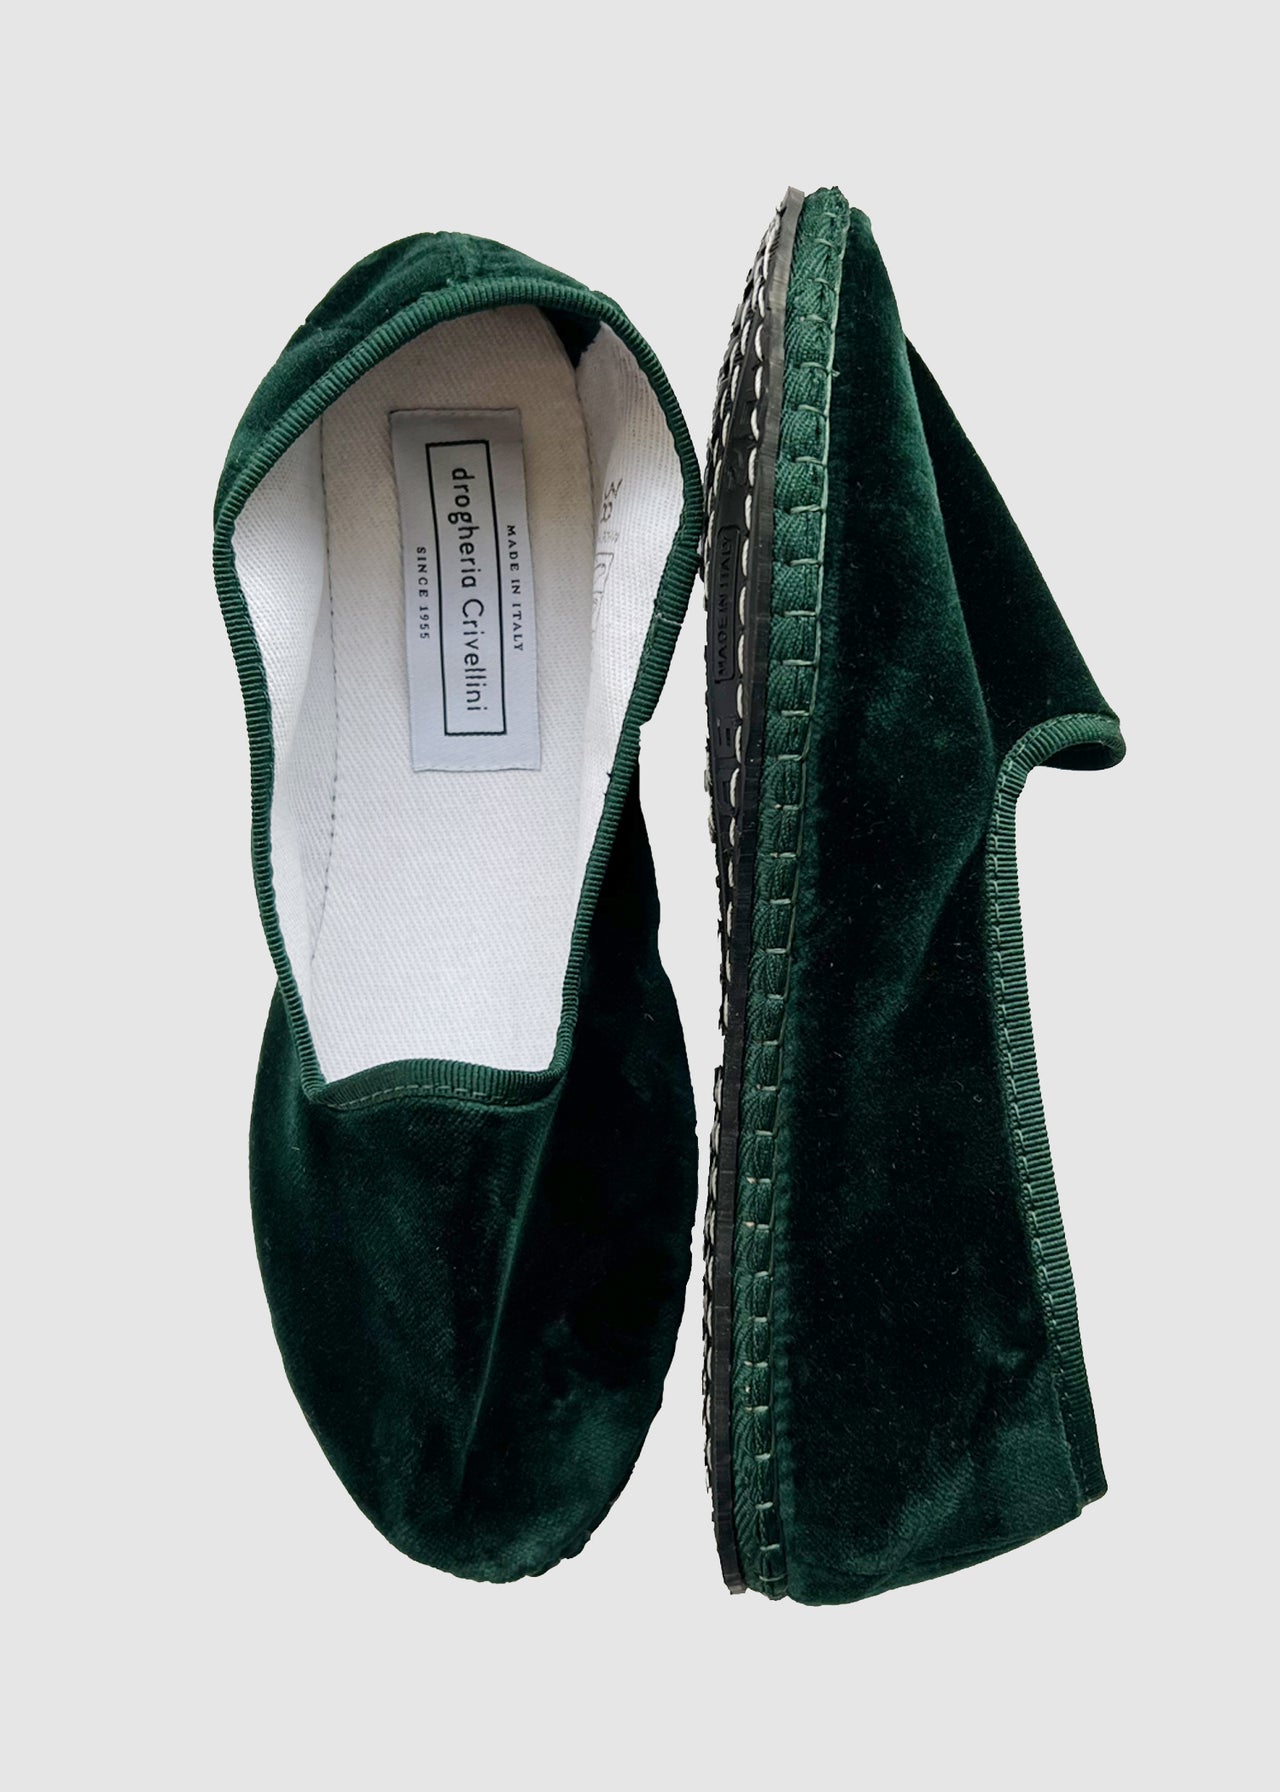 Drogheria Crivellini Shoes | Aimé London